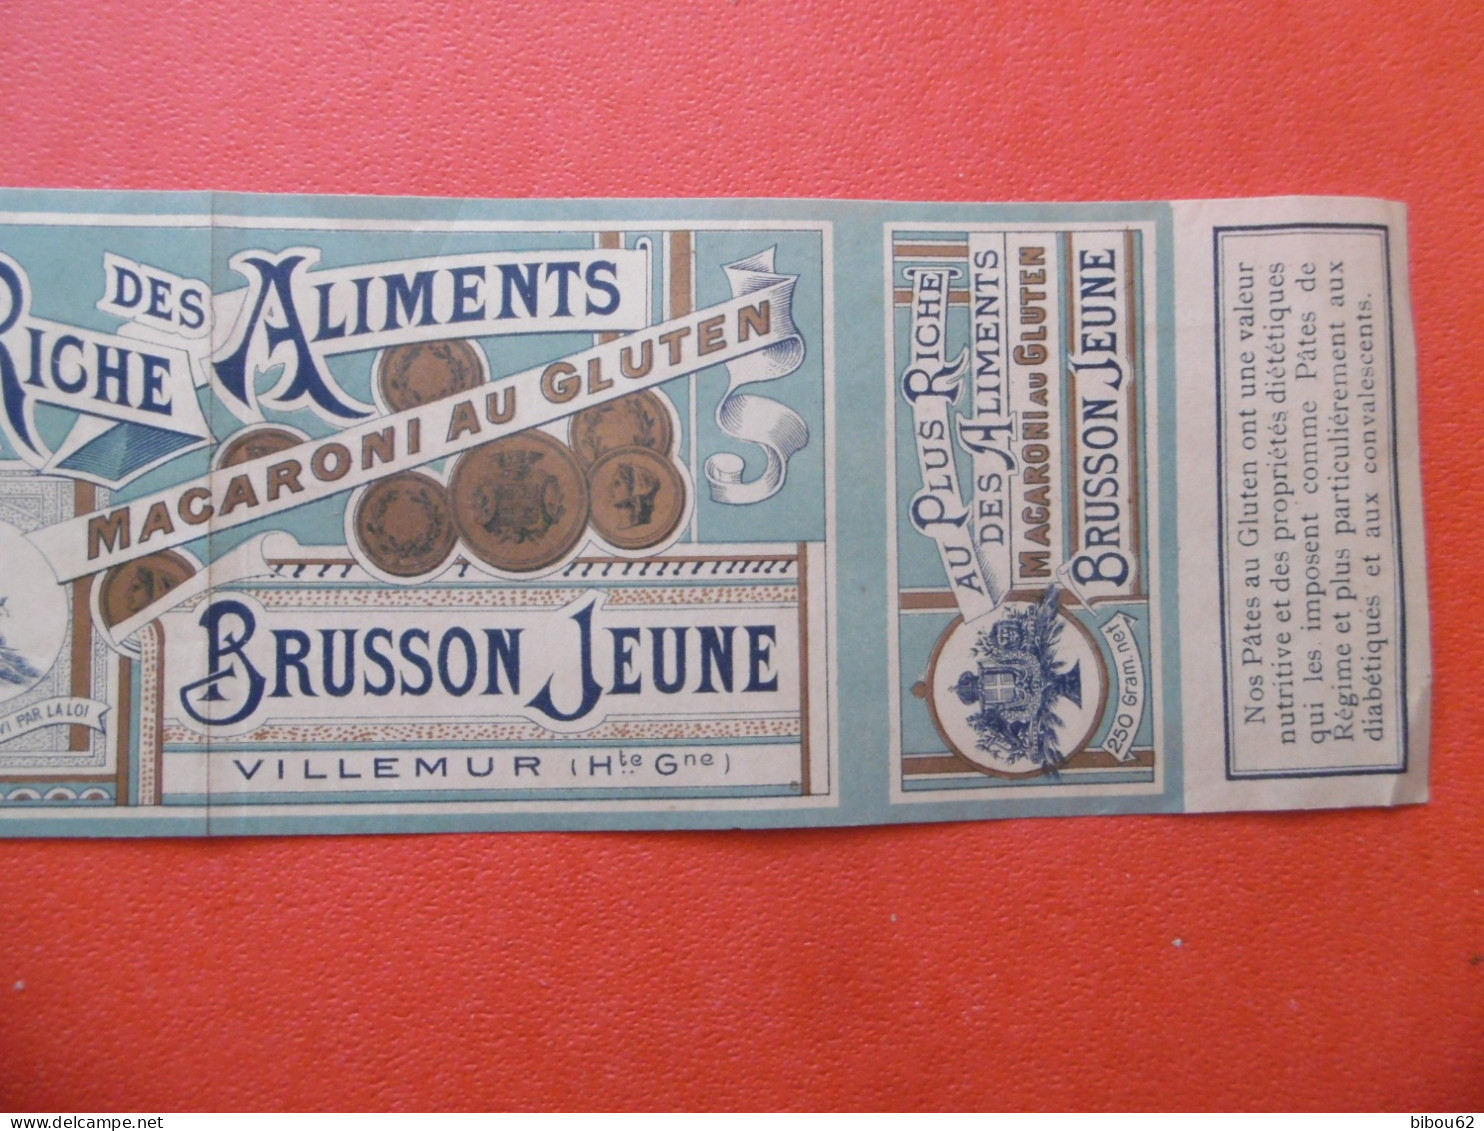 VILLEMUR  ( 31 ) Bande Publicitaire D'habillage De Boite - BRUSSON  Jeune - Macaroni Au Gluten - 1900 - Food